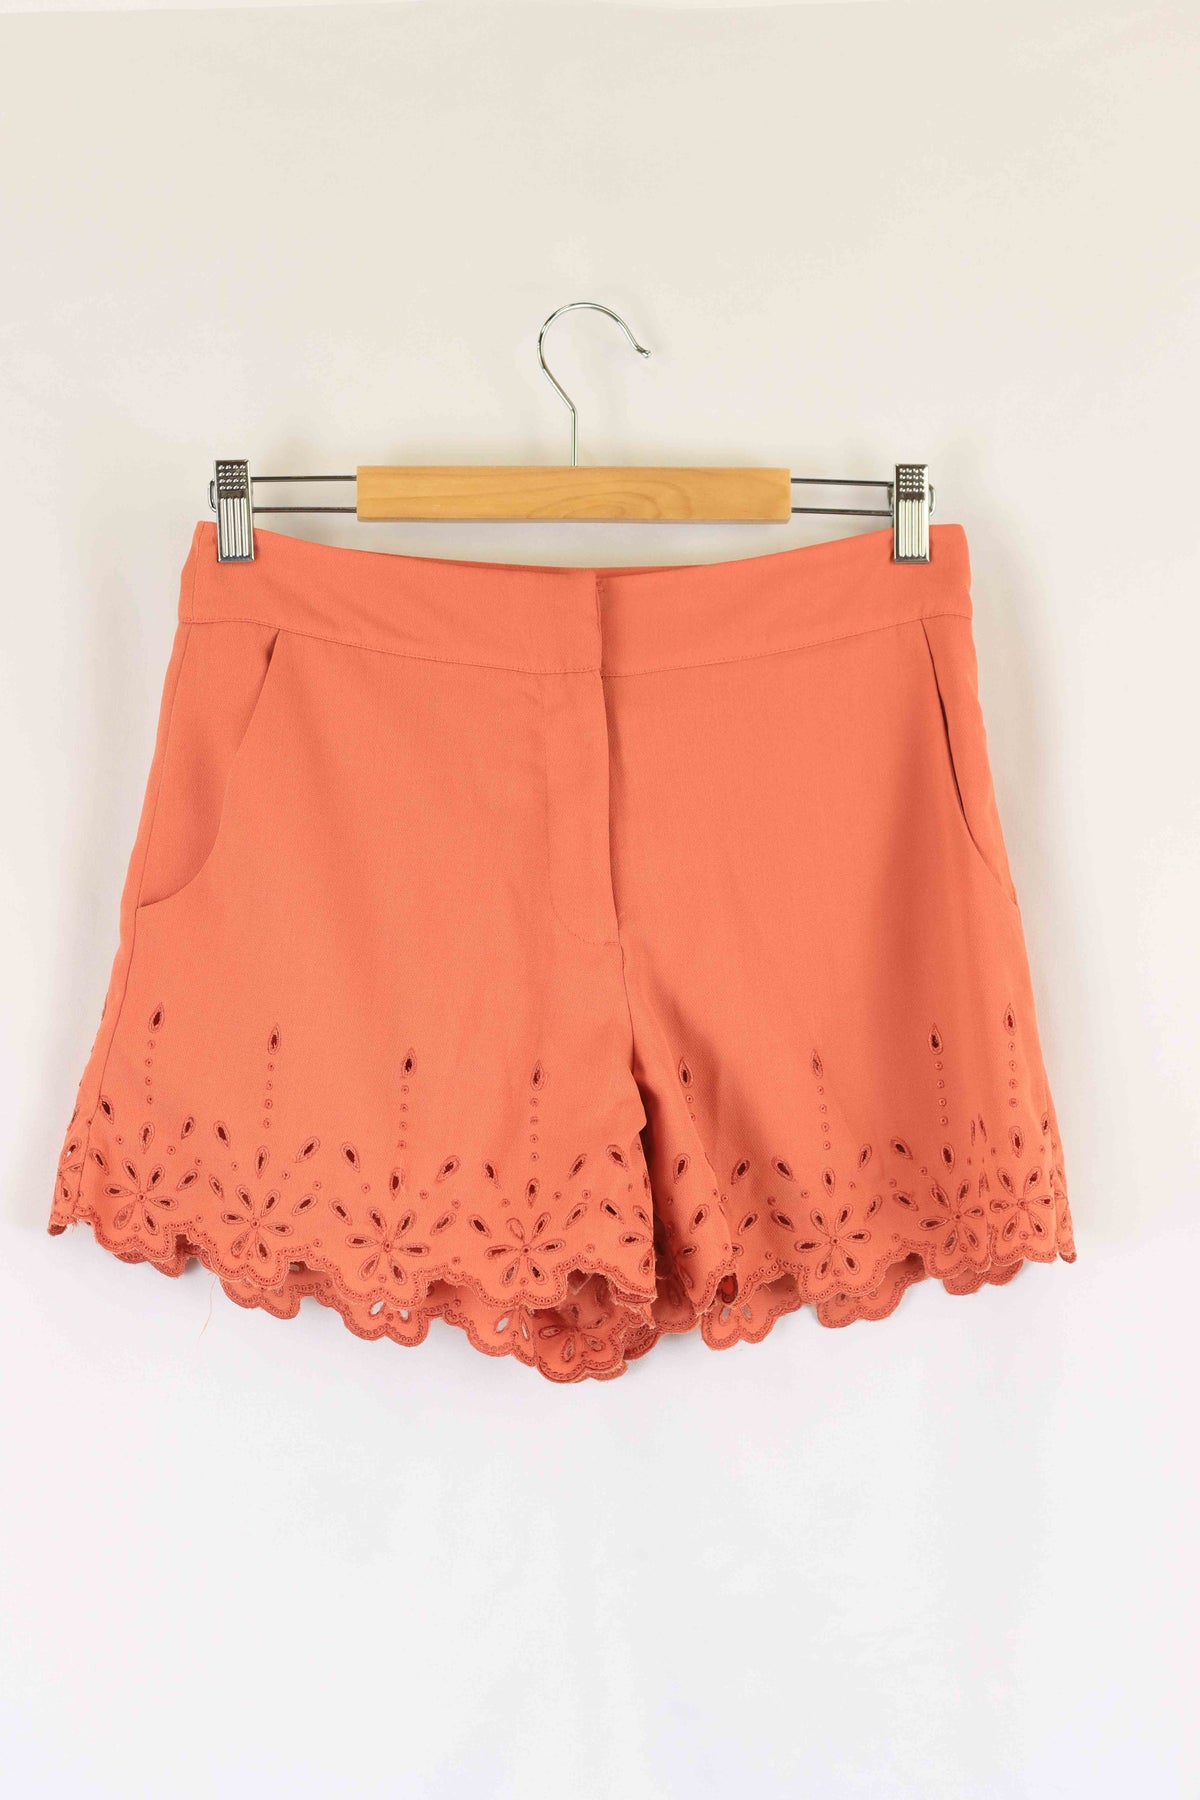 Topshop Coral Pink Shorts 10